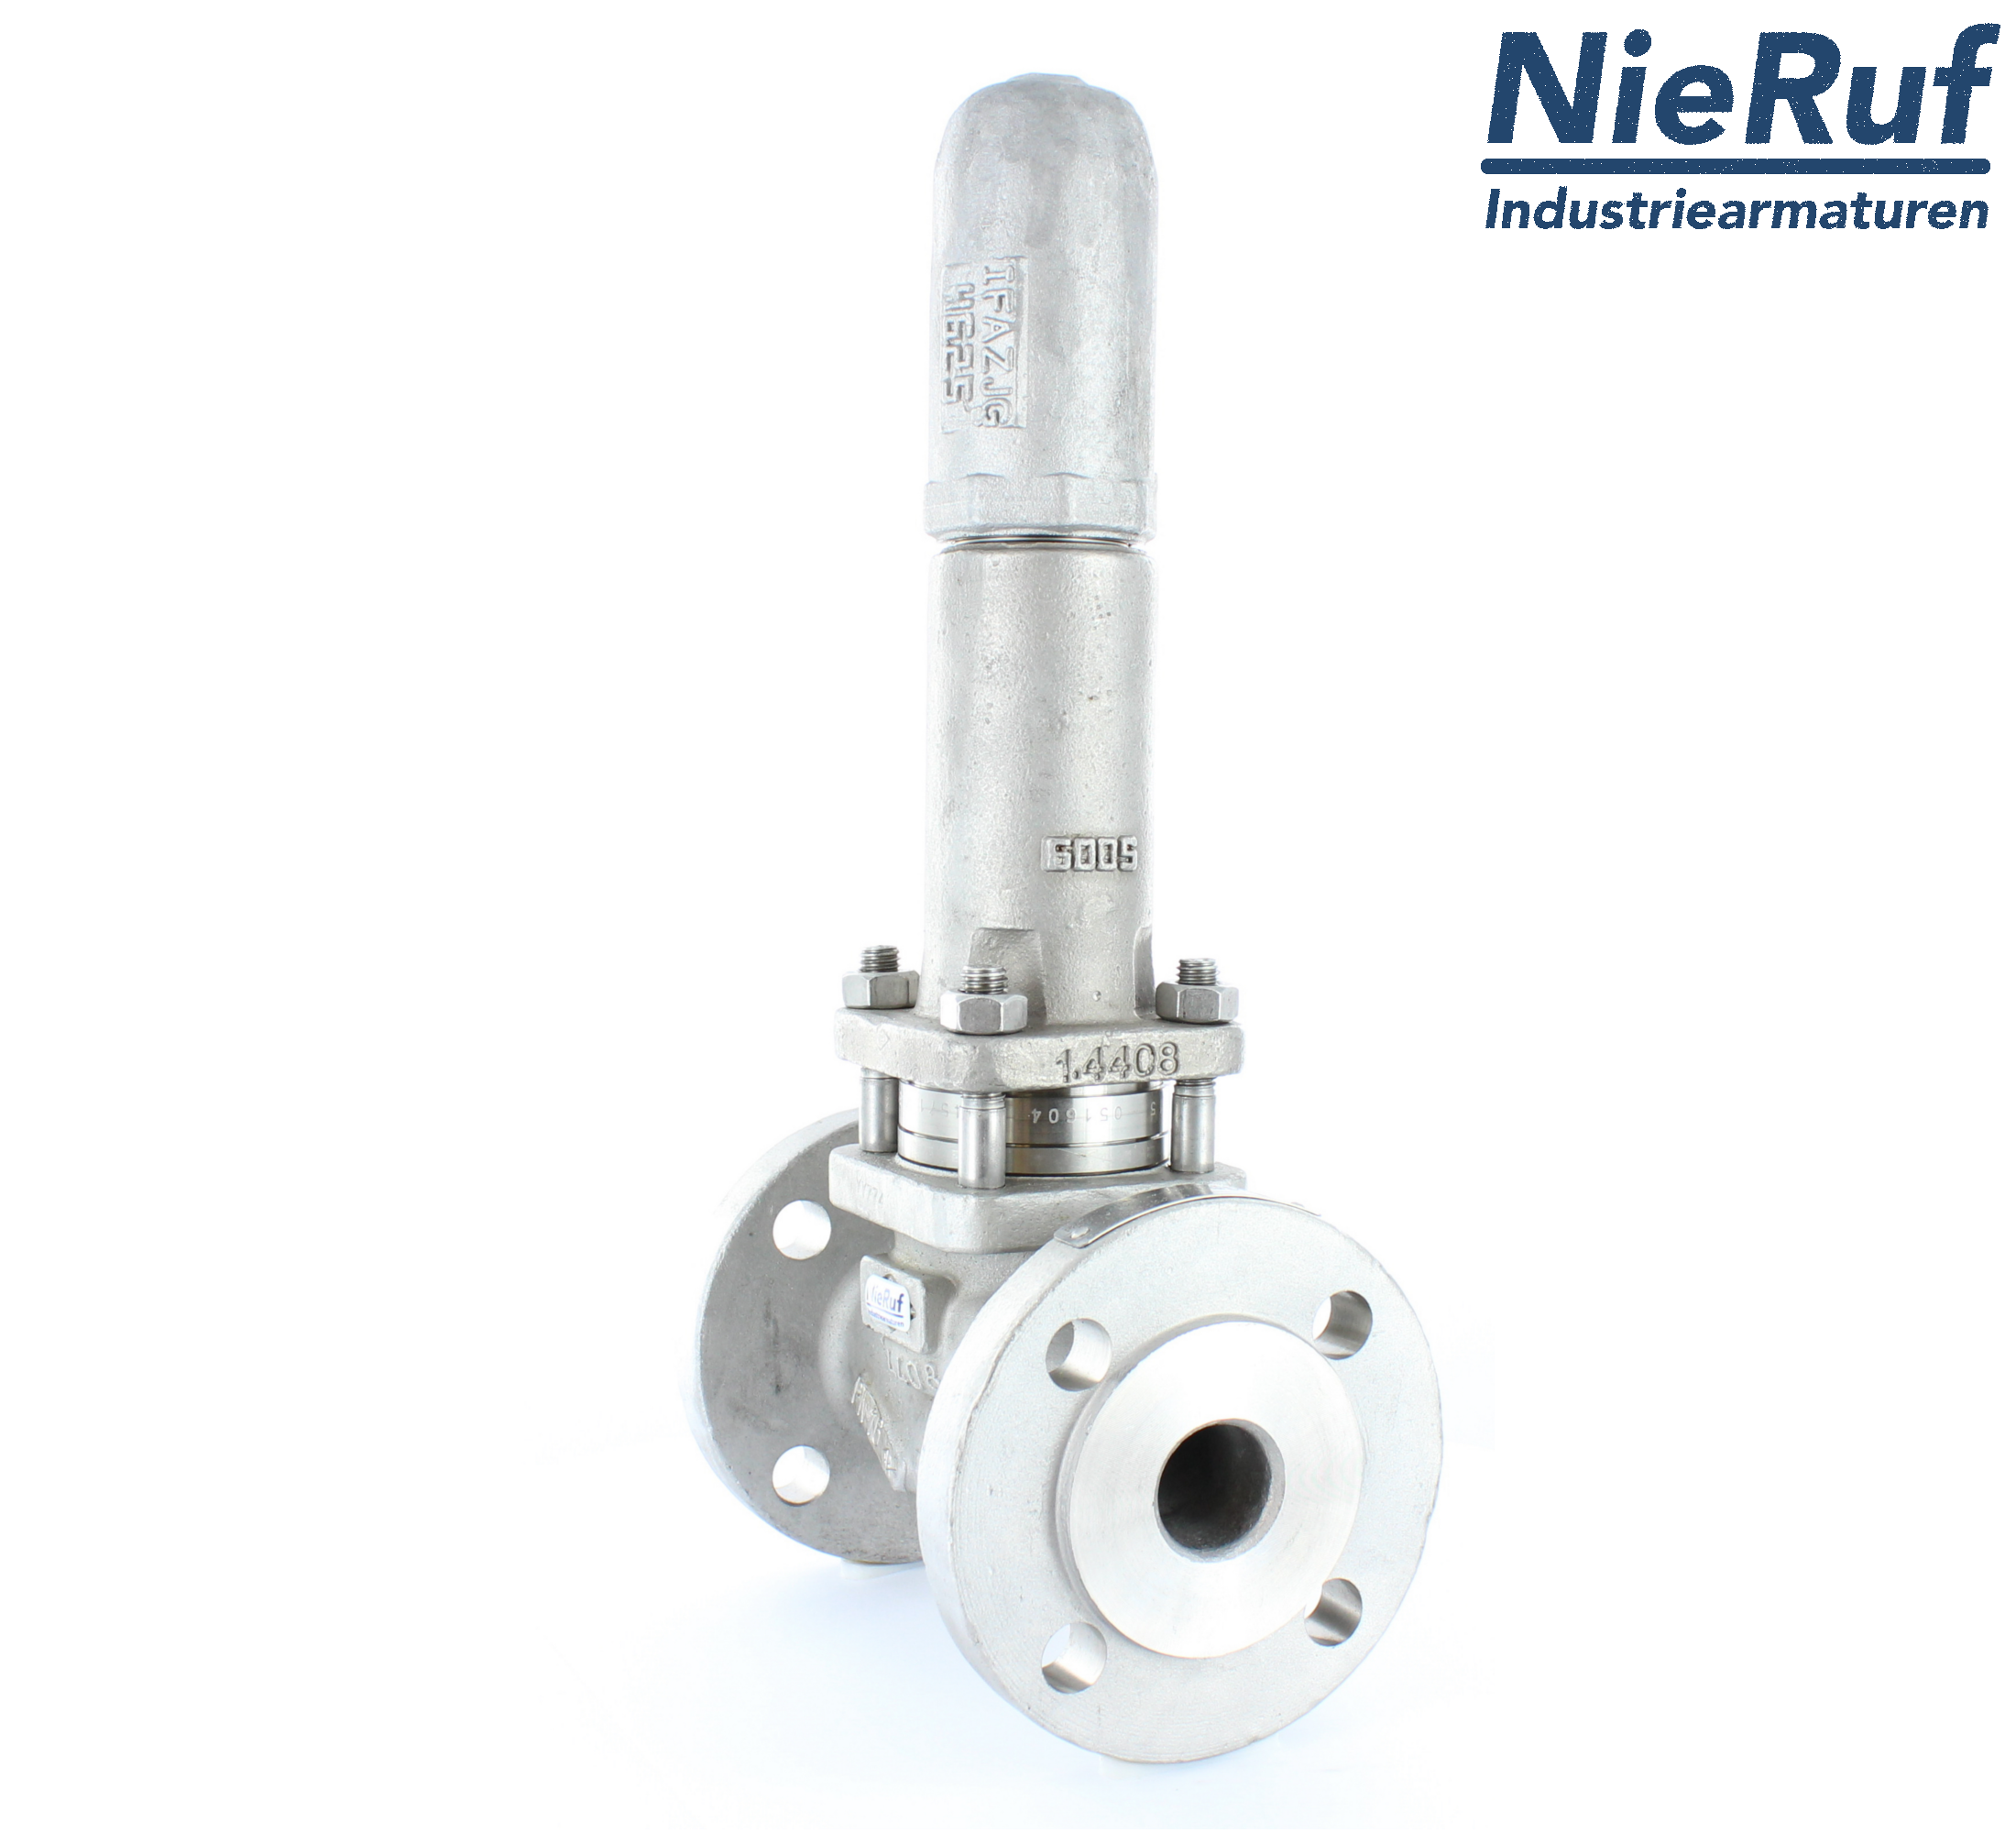 piston overflow valve DN 80 UV13 cast iron 1.0619+N 4,0 - 10,0 bar